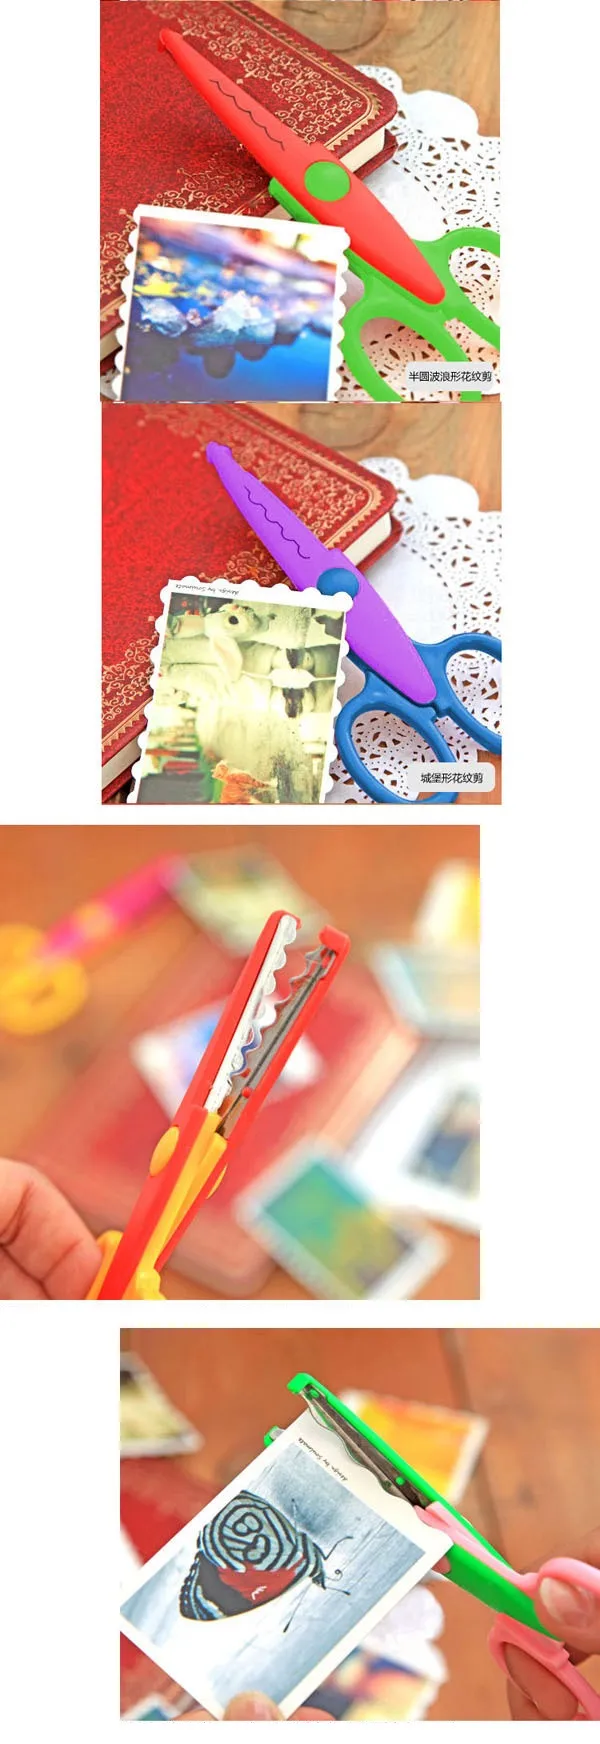 [4Y4A] 2 шт./лот/партия детские ножницы Laciness для DIY фотоальбома ручной работы, фотоальбом открытка Фотодневник декоративные ножницы Laciness